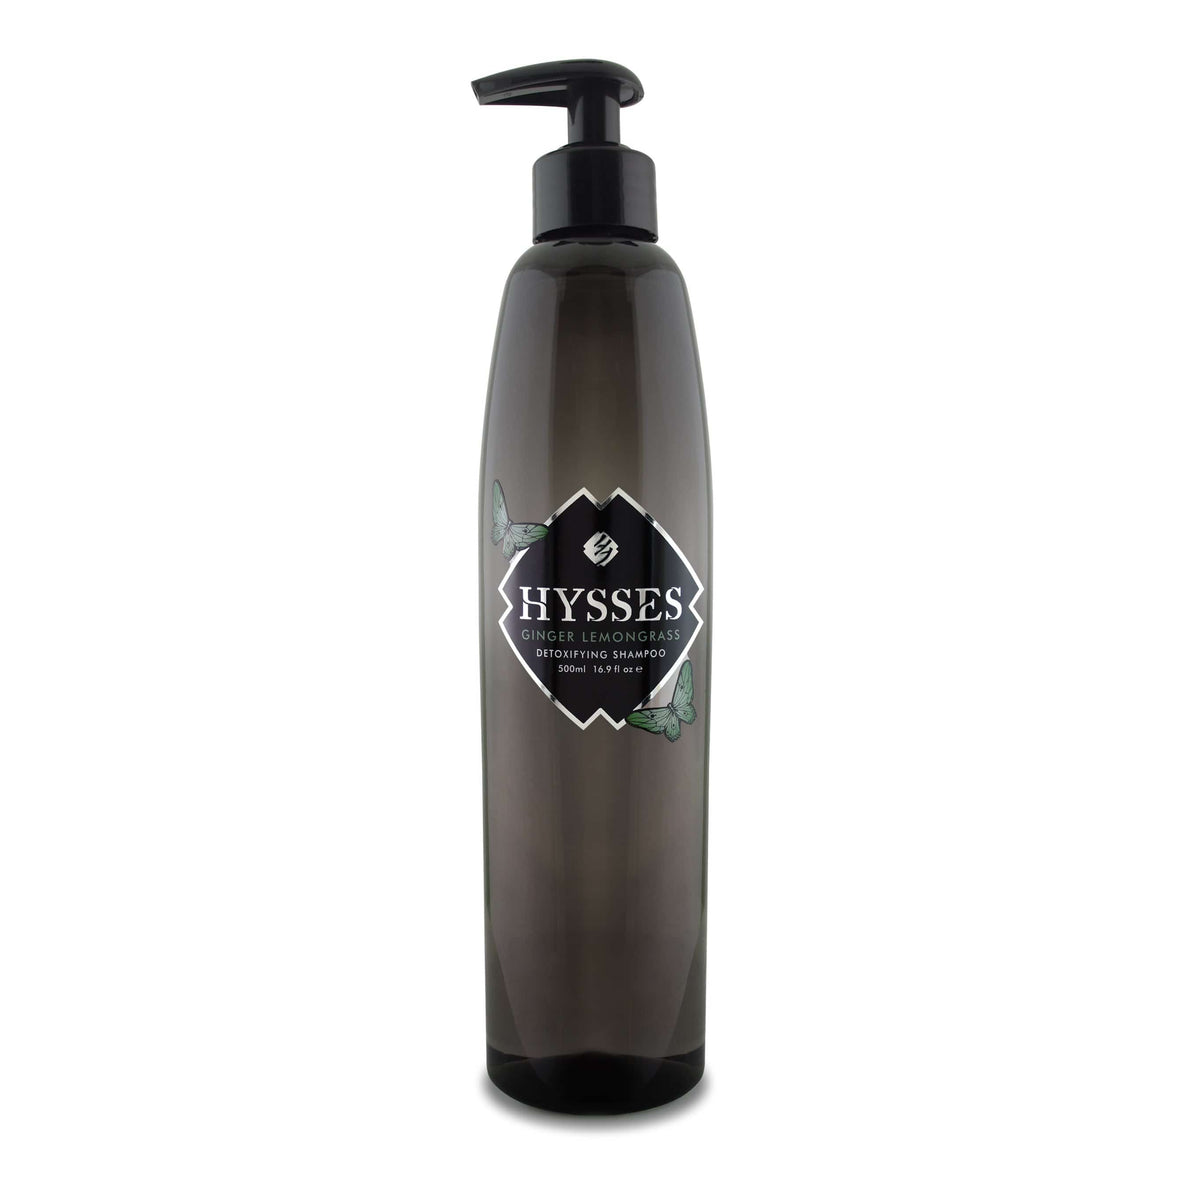 Hysses Hair Care 500ml Shampoo Ginger Lemongrass